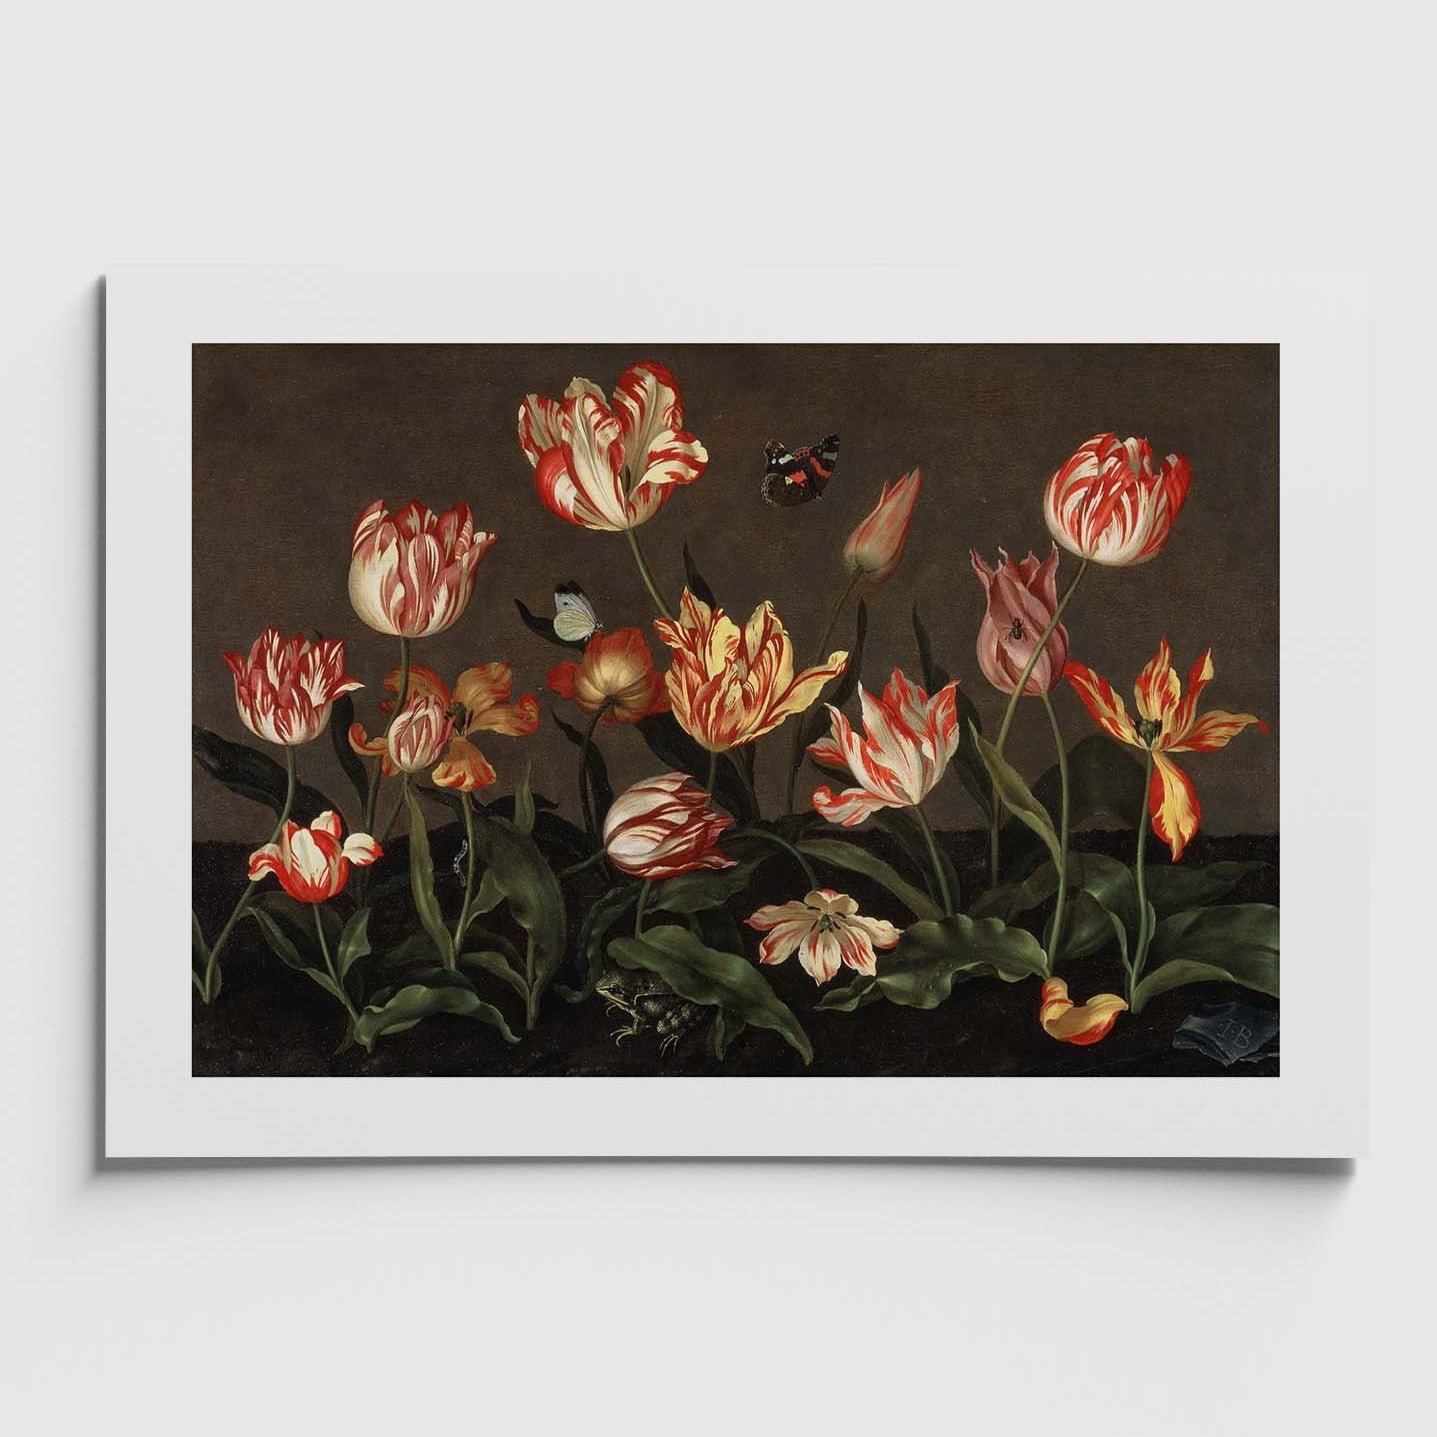 affisch med tulpaner från Nationalmuseum